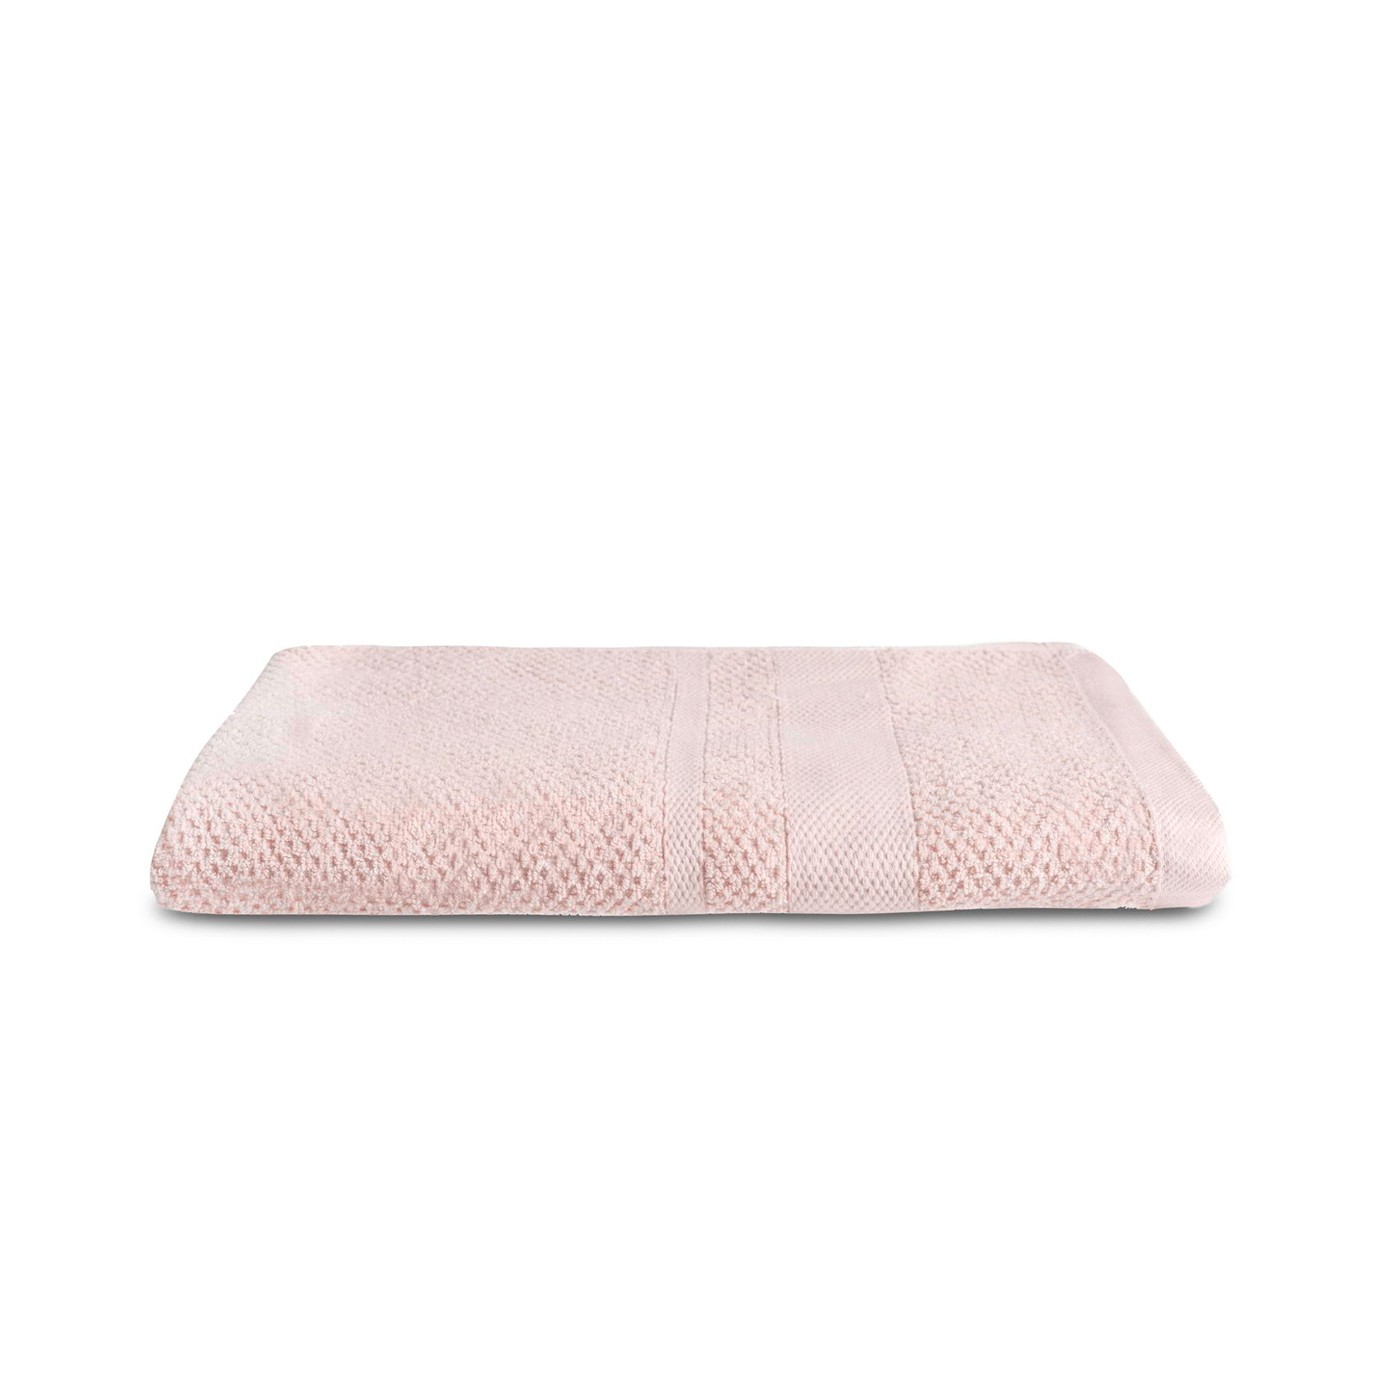 Полотенце Байрон цвет: розовый (70х140 см), размер 70х140 см sofi881249 Полотенце Байрон цвет: розовый (70х140 см) - фото 1